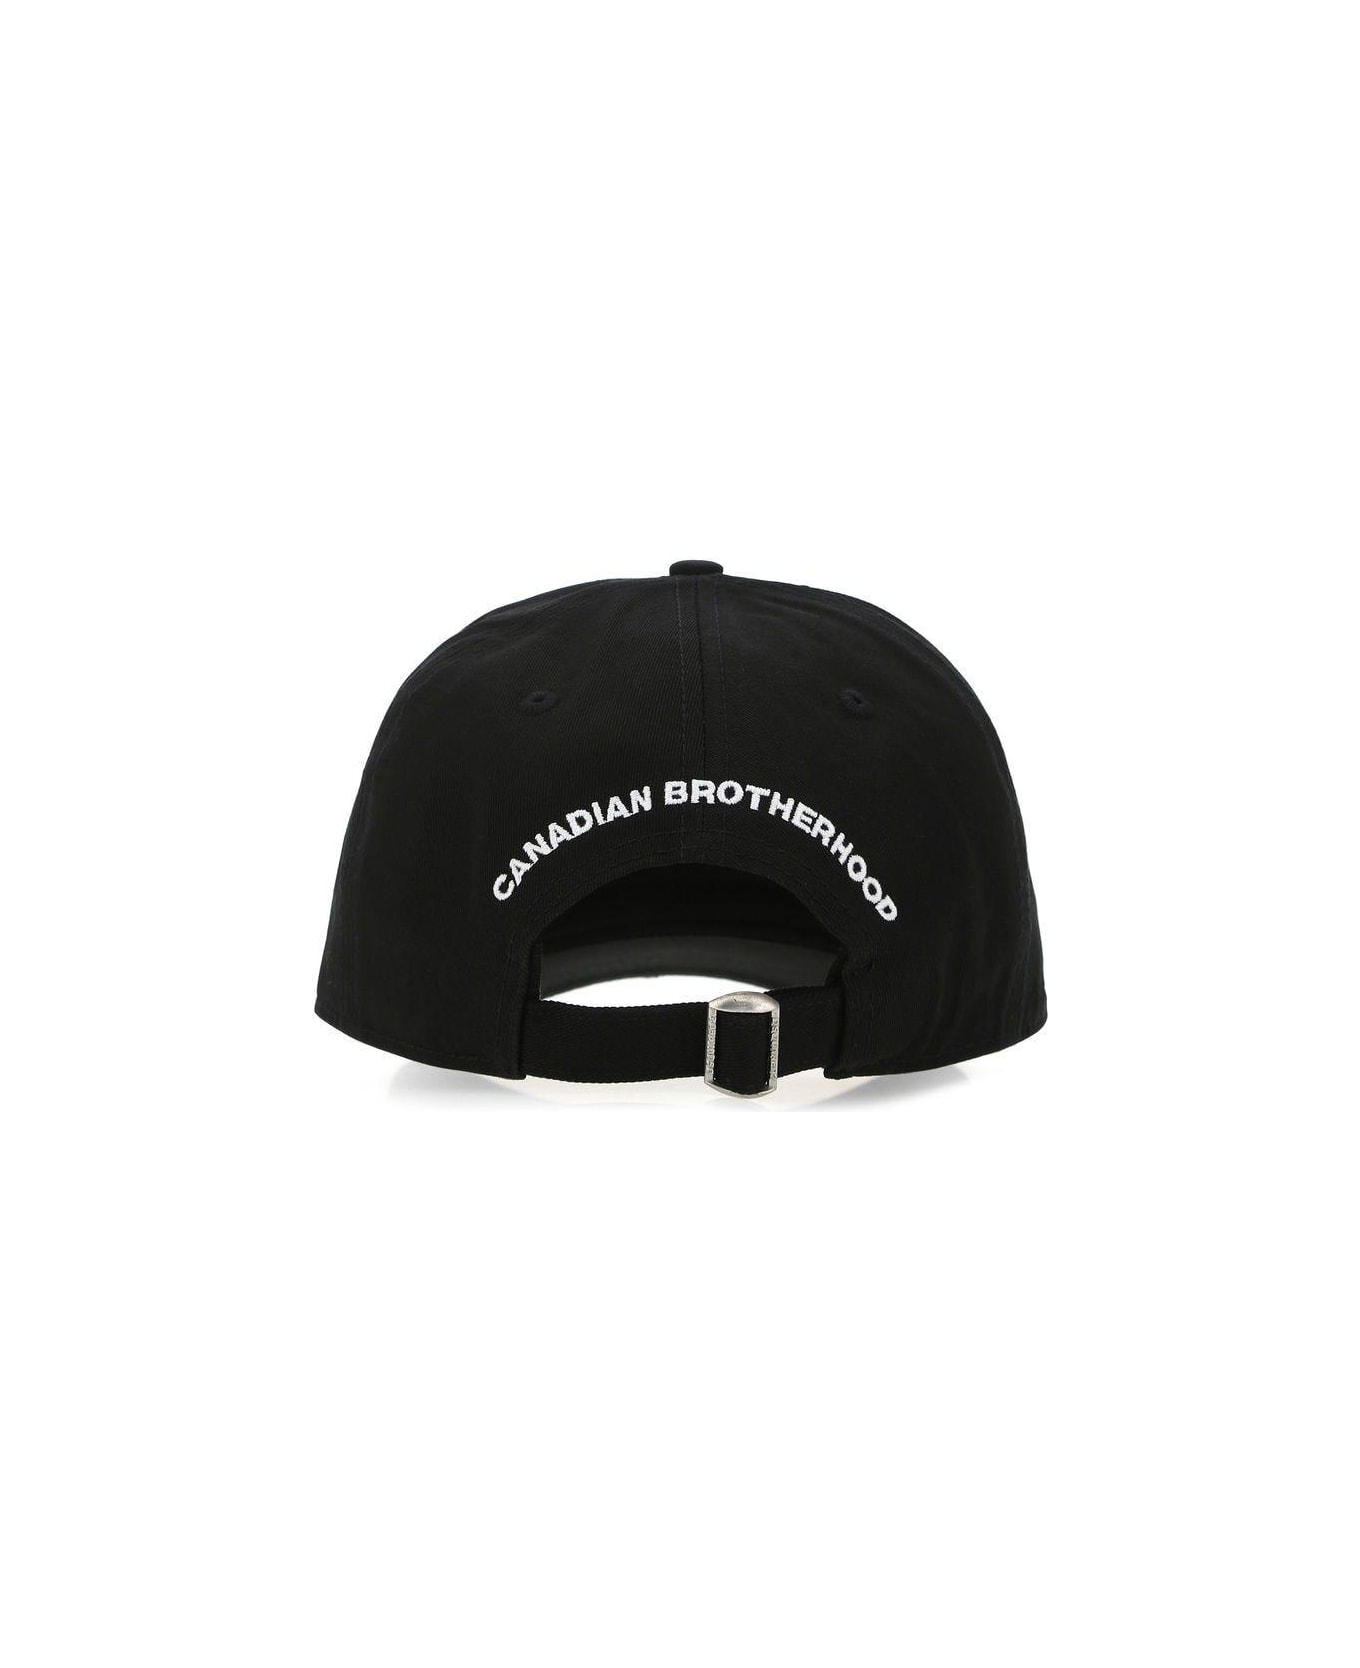 Dsquared2 Baseball Cap - Black, white 帽子